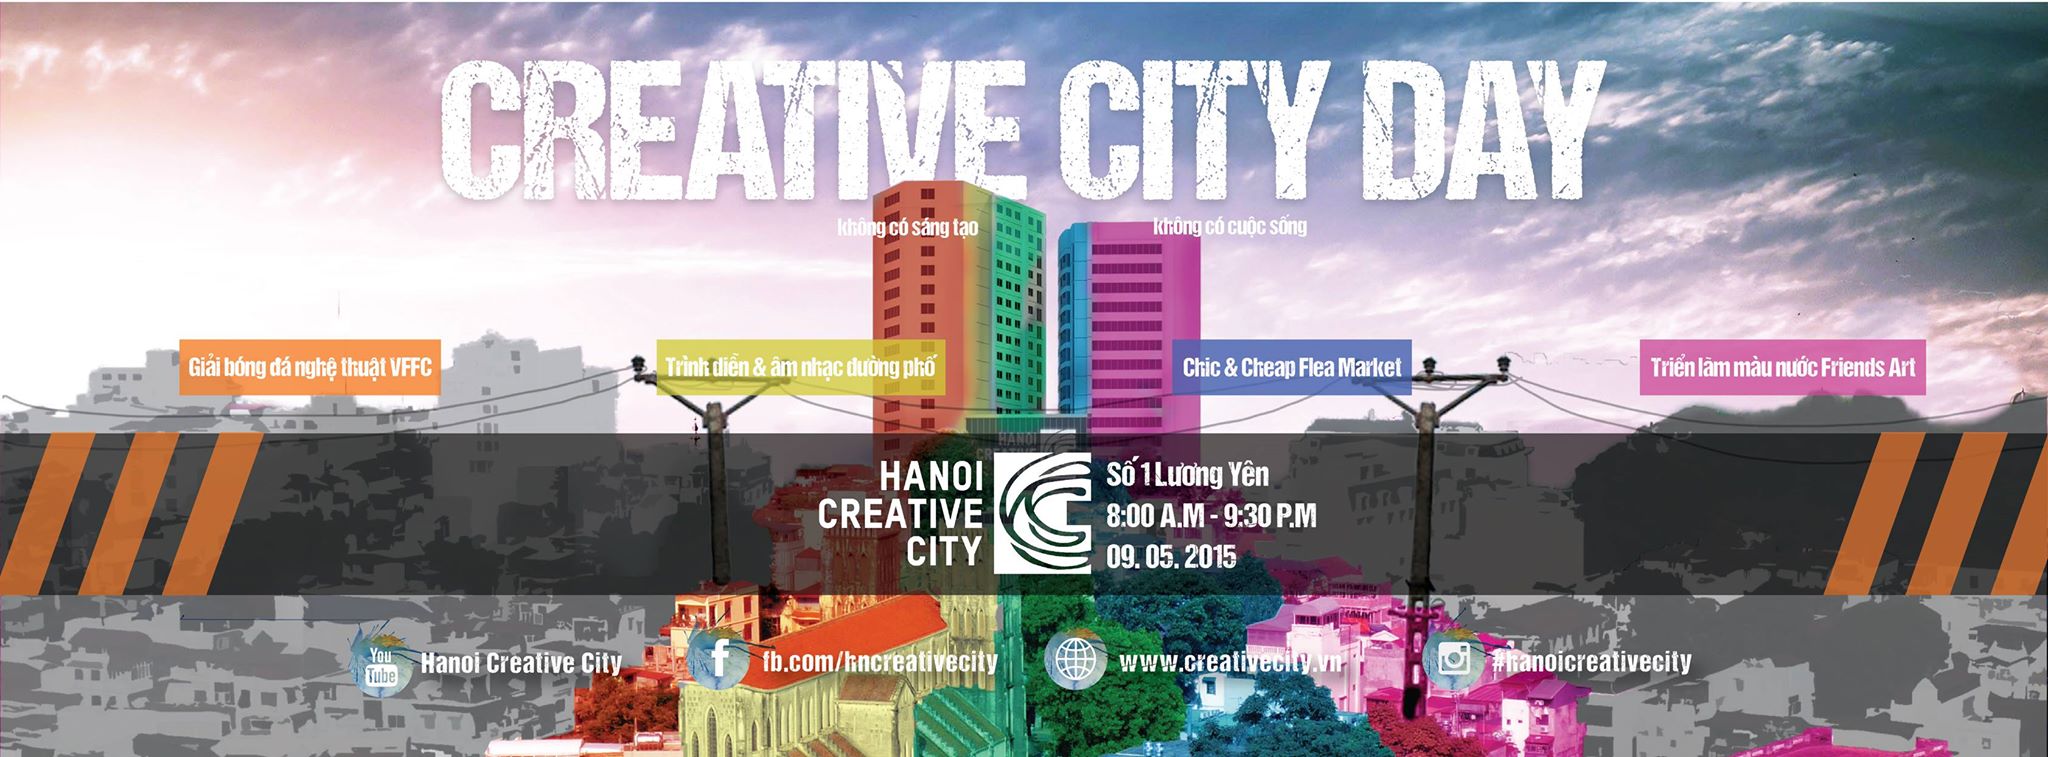 Hanoi Creative chính thức khai trương vào ngày 05.09.2015